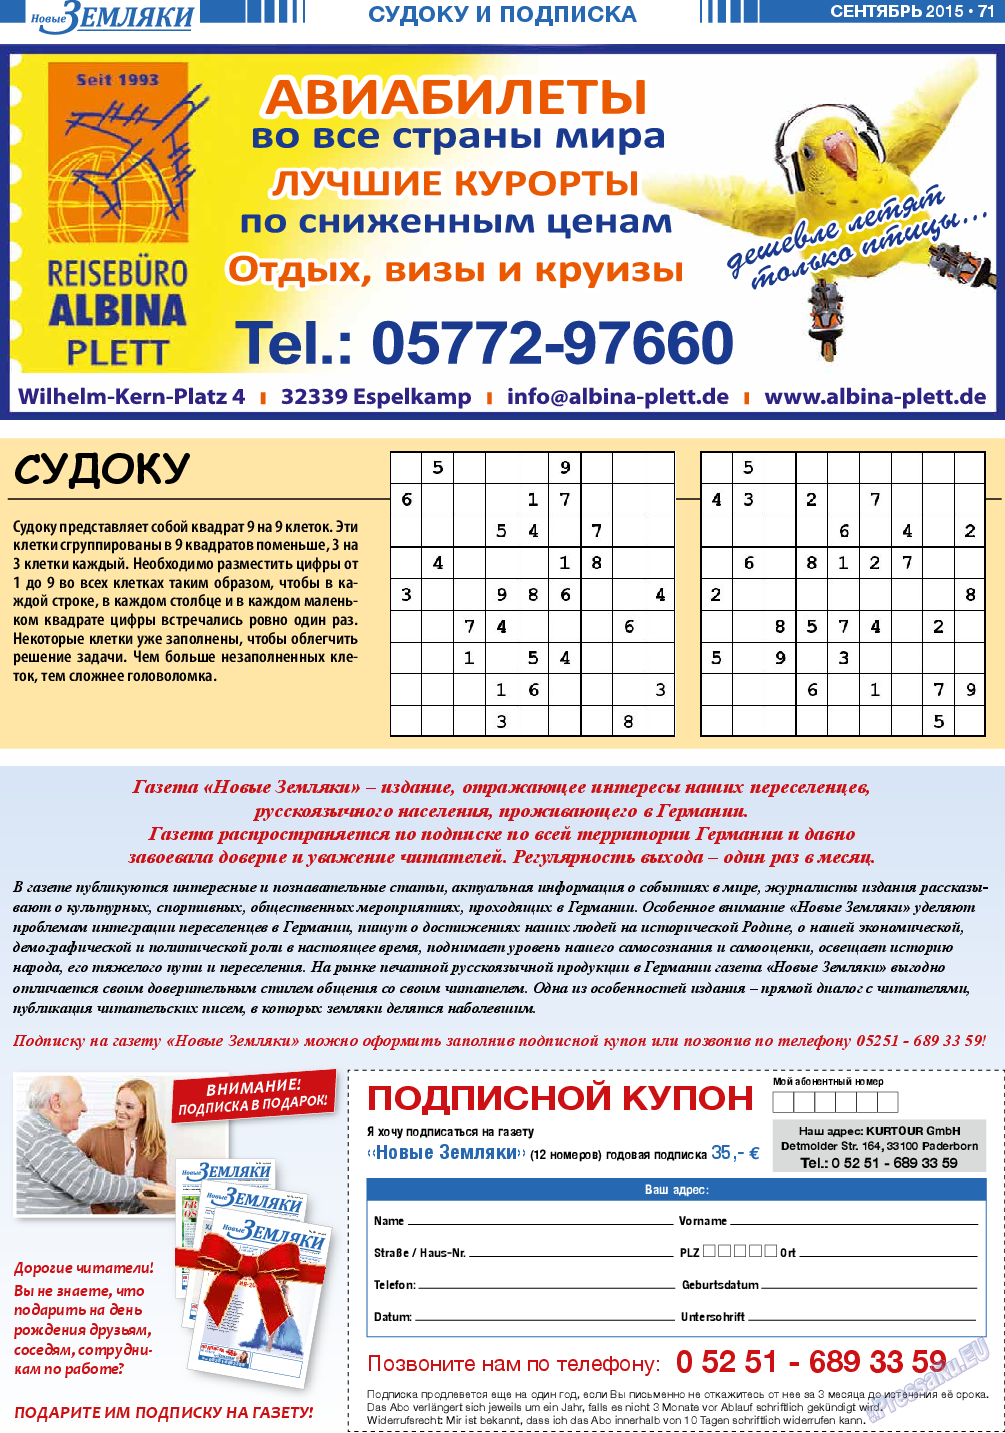 Новые Земляки (газета). 2015 год, номер 9, стр. 71